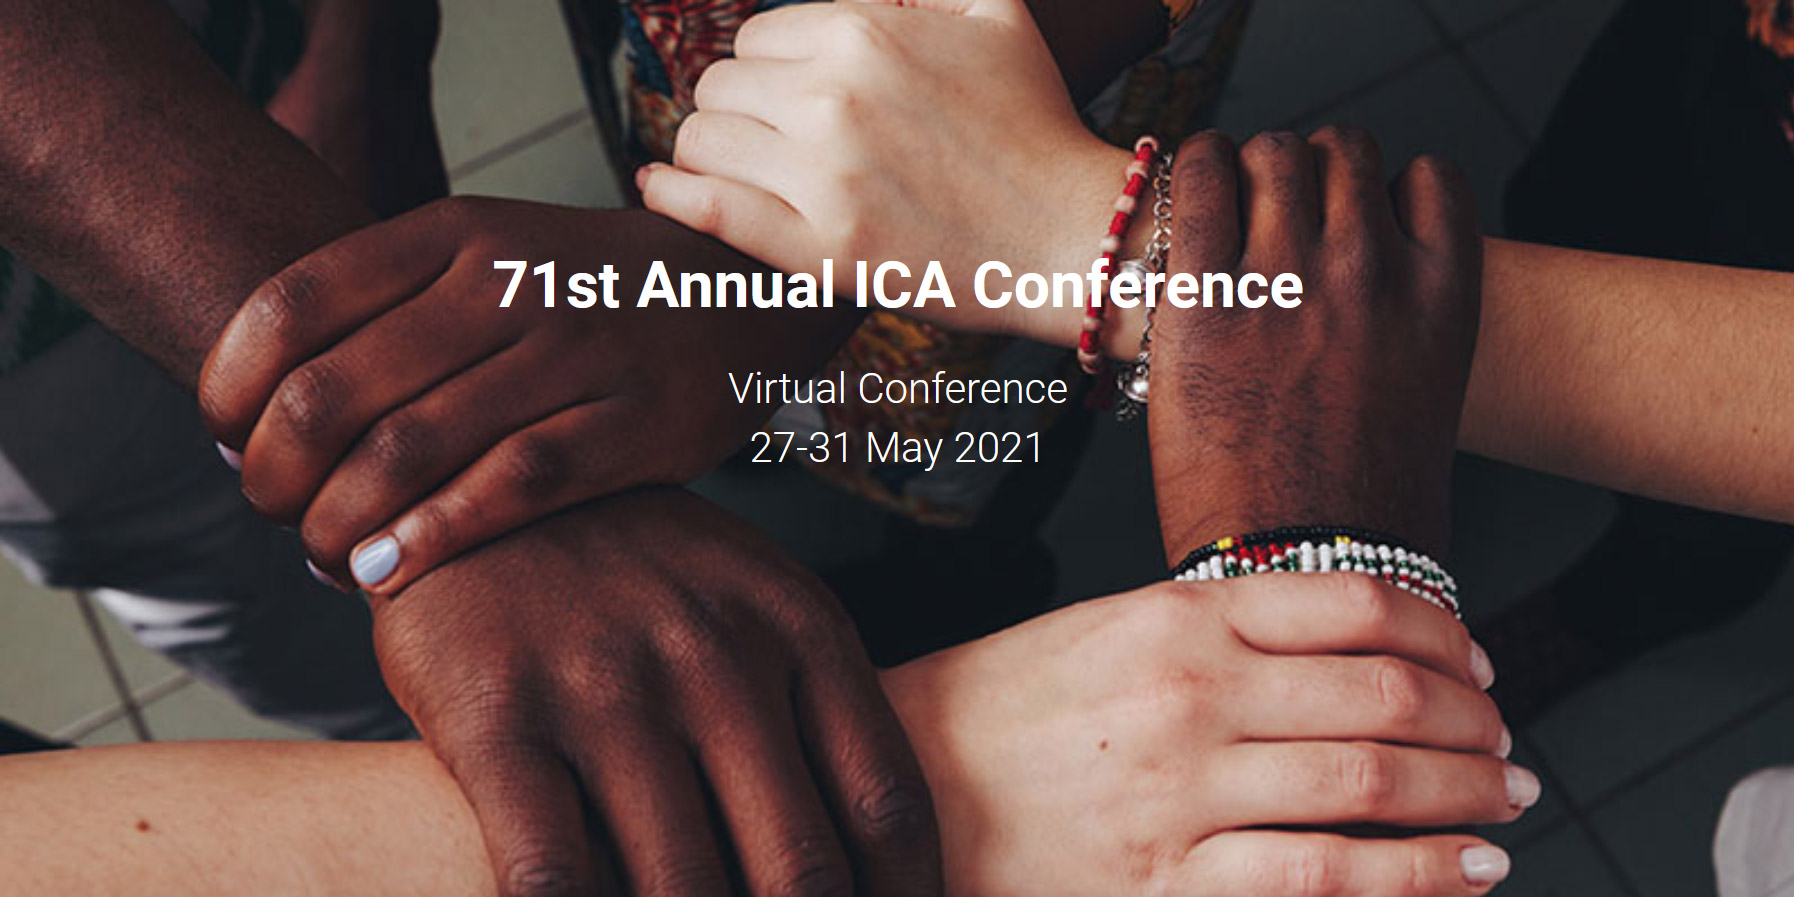 Hände von Menschen unterschiedlicher Hautfarbe bilden einen Kreis. Darüber steht "71st Annual ICA Conference"